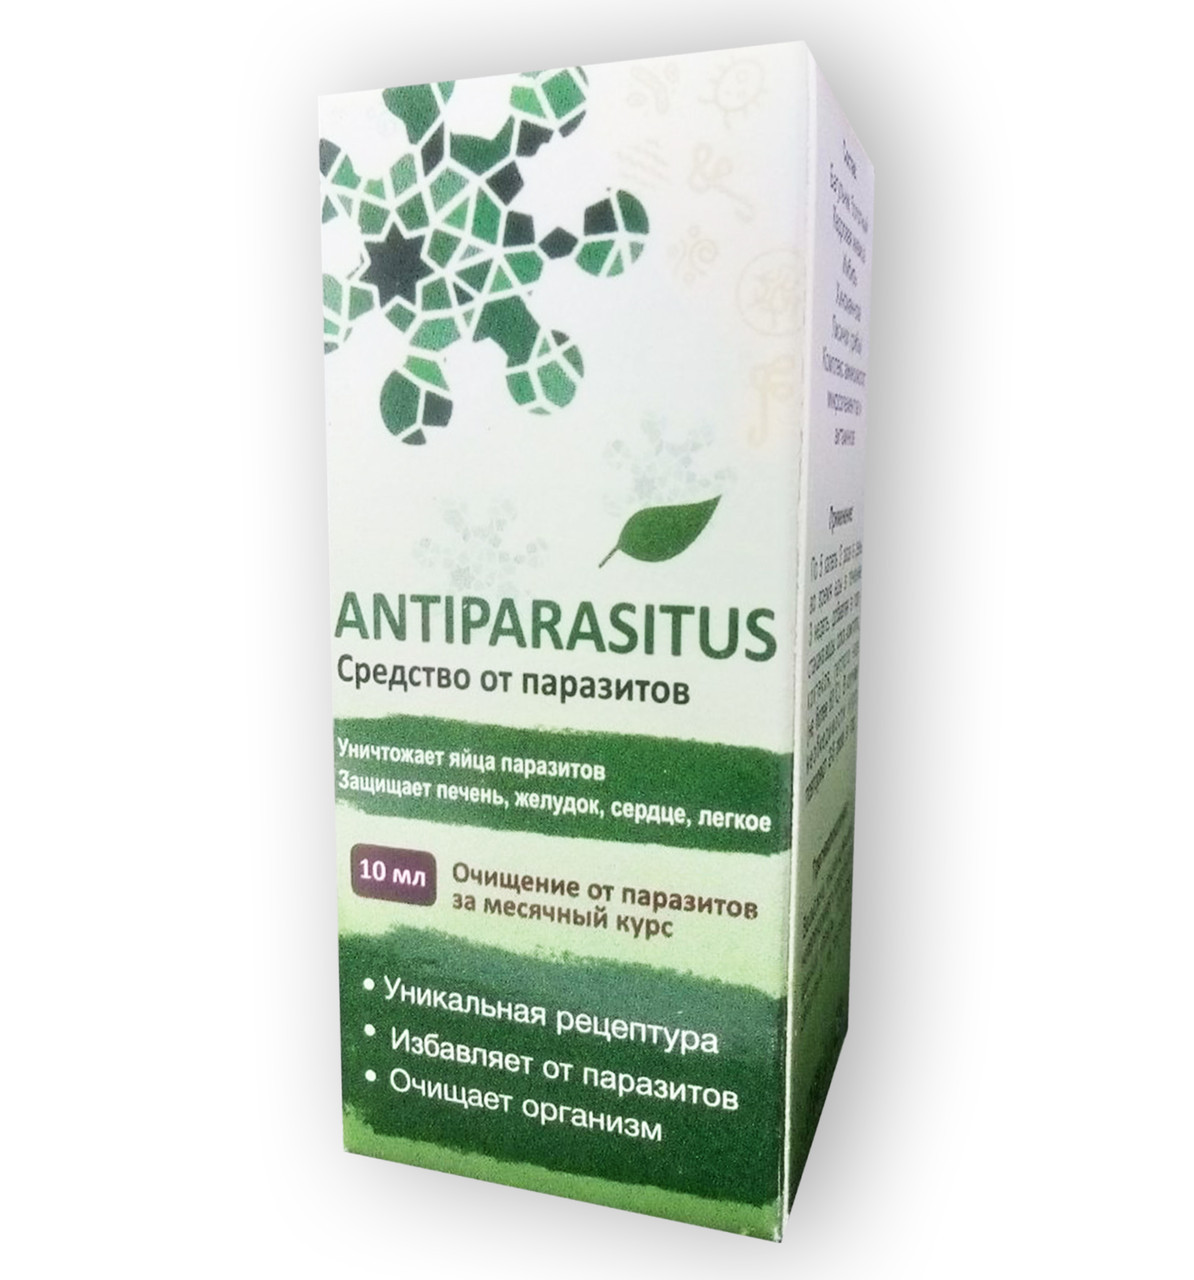 Antiparasitus - Засіб від паразитів (Антипаразитус)